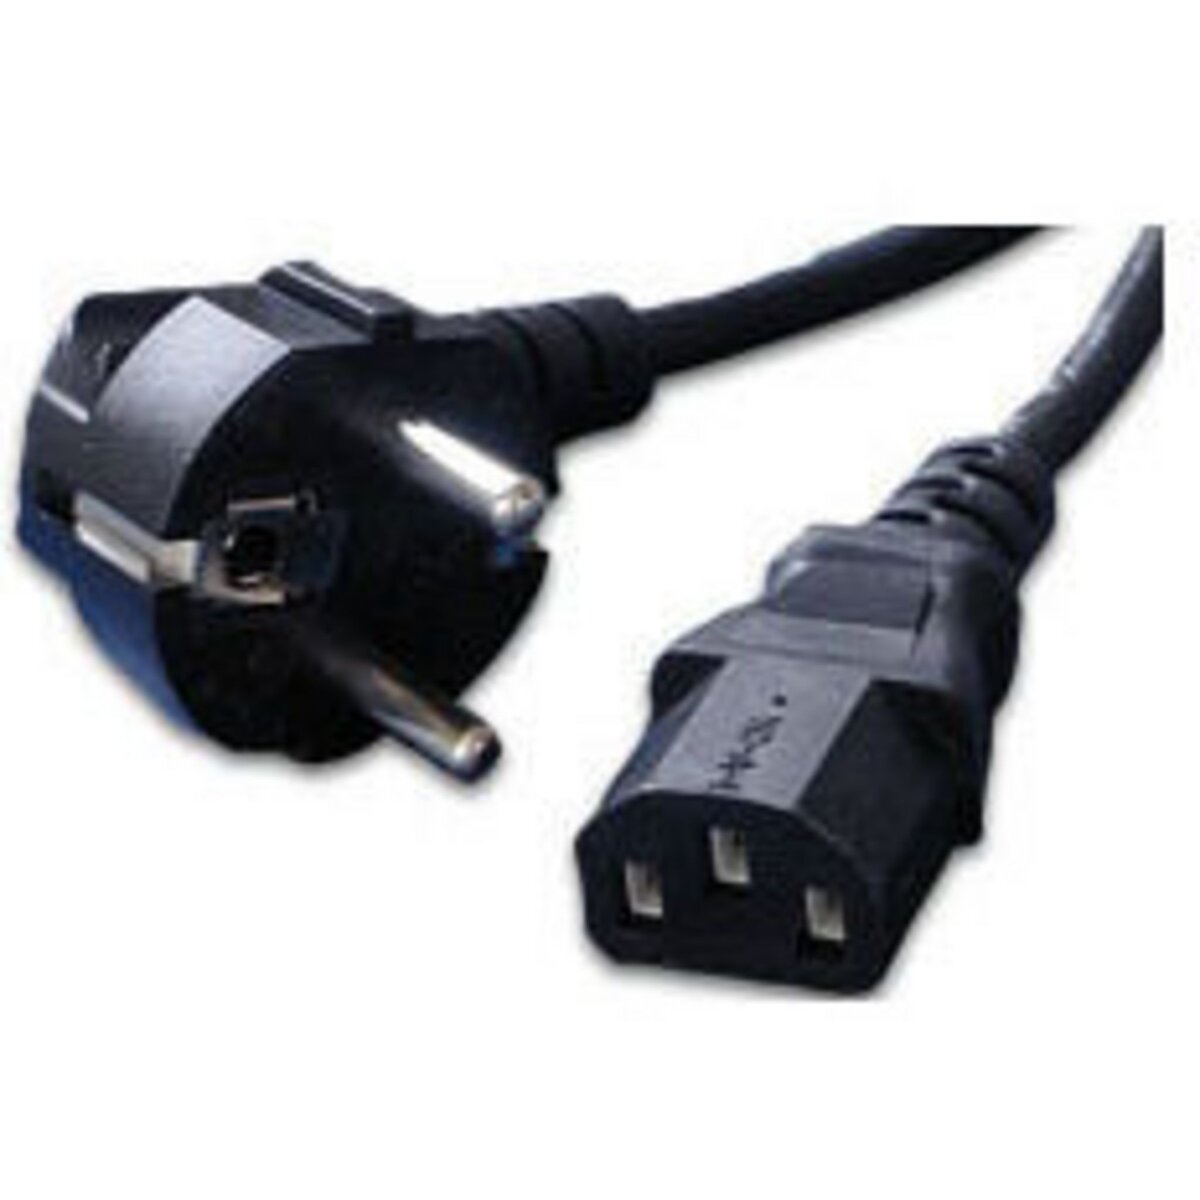 mcl cable pour alimentation AC ATX pour ordinateur PC - Noir